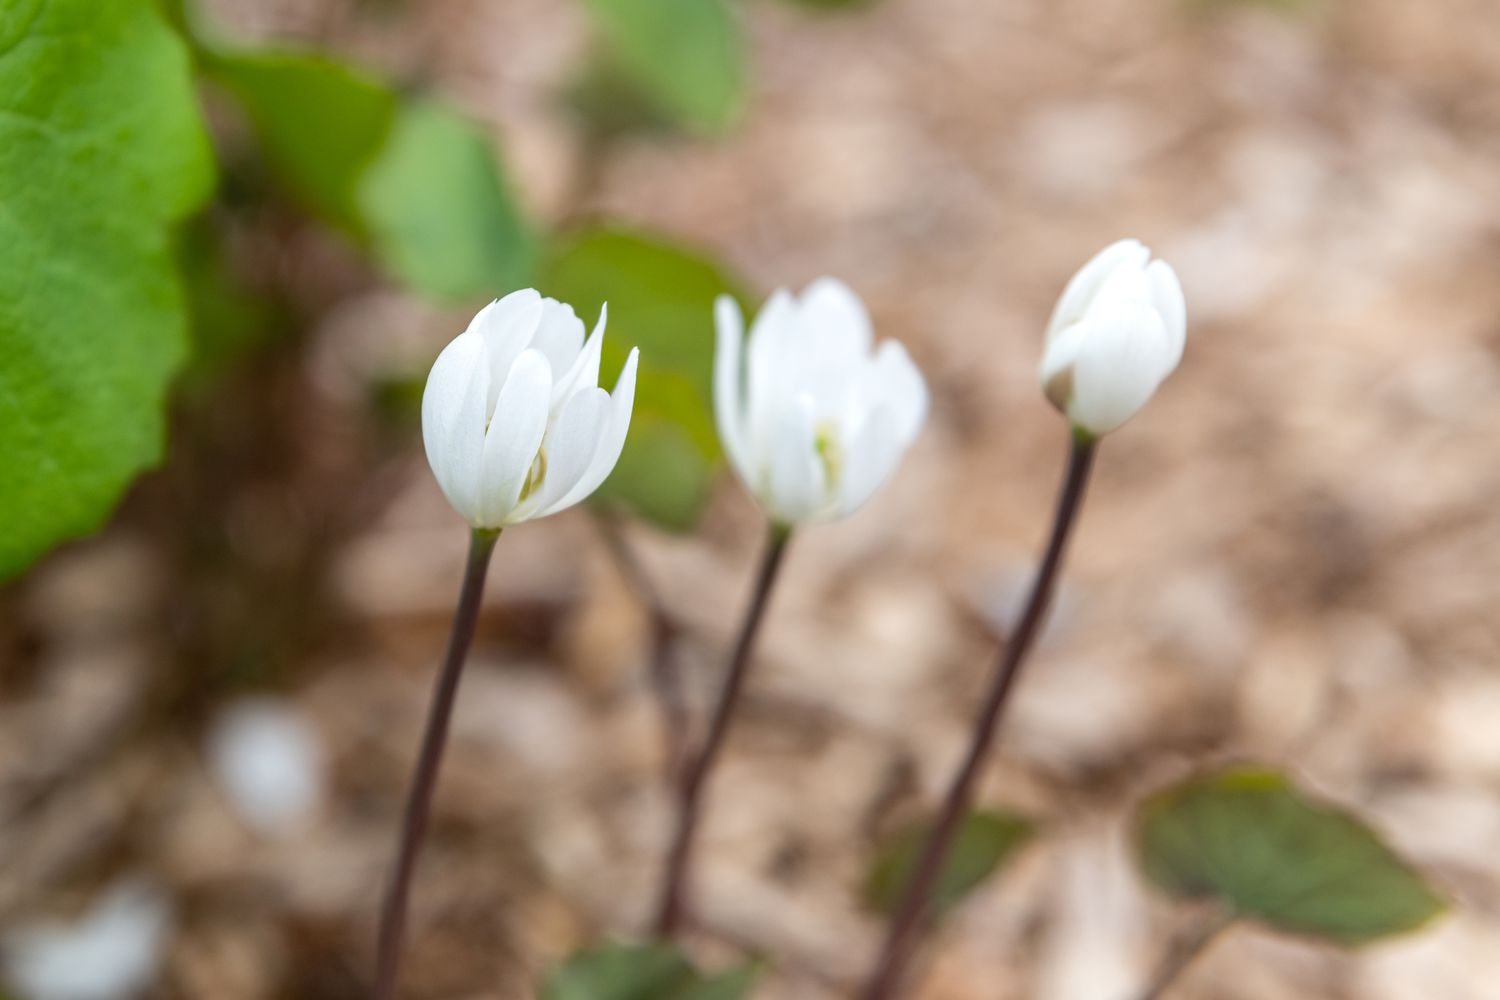 Zweiblattpflanze mit kleinen weißen becherförmigen Blüten in Nahaufnahme